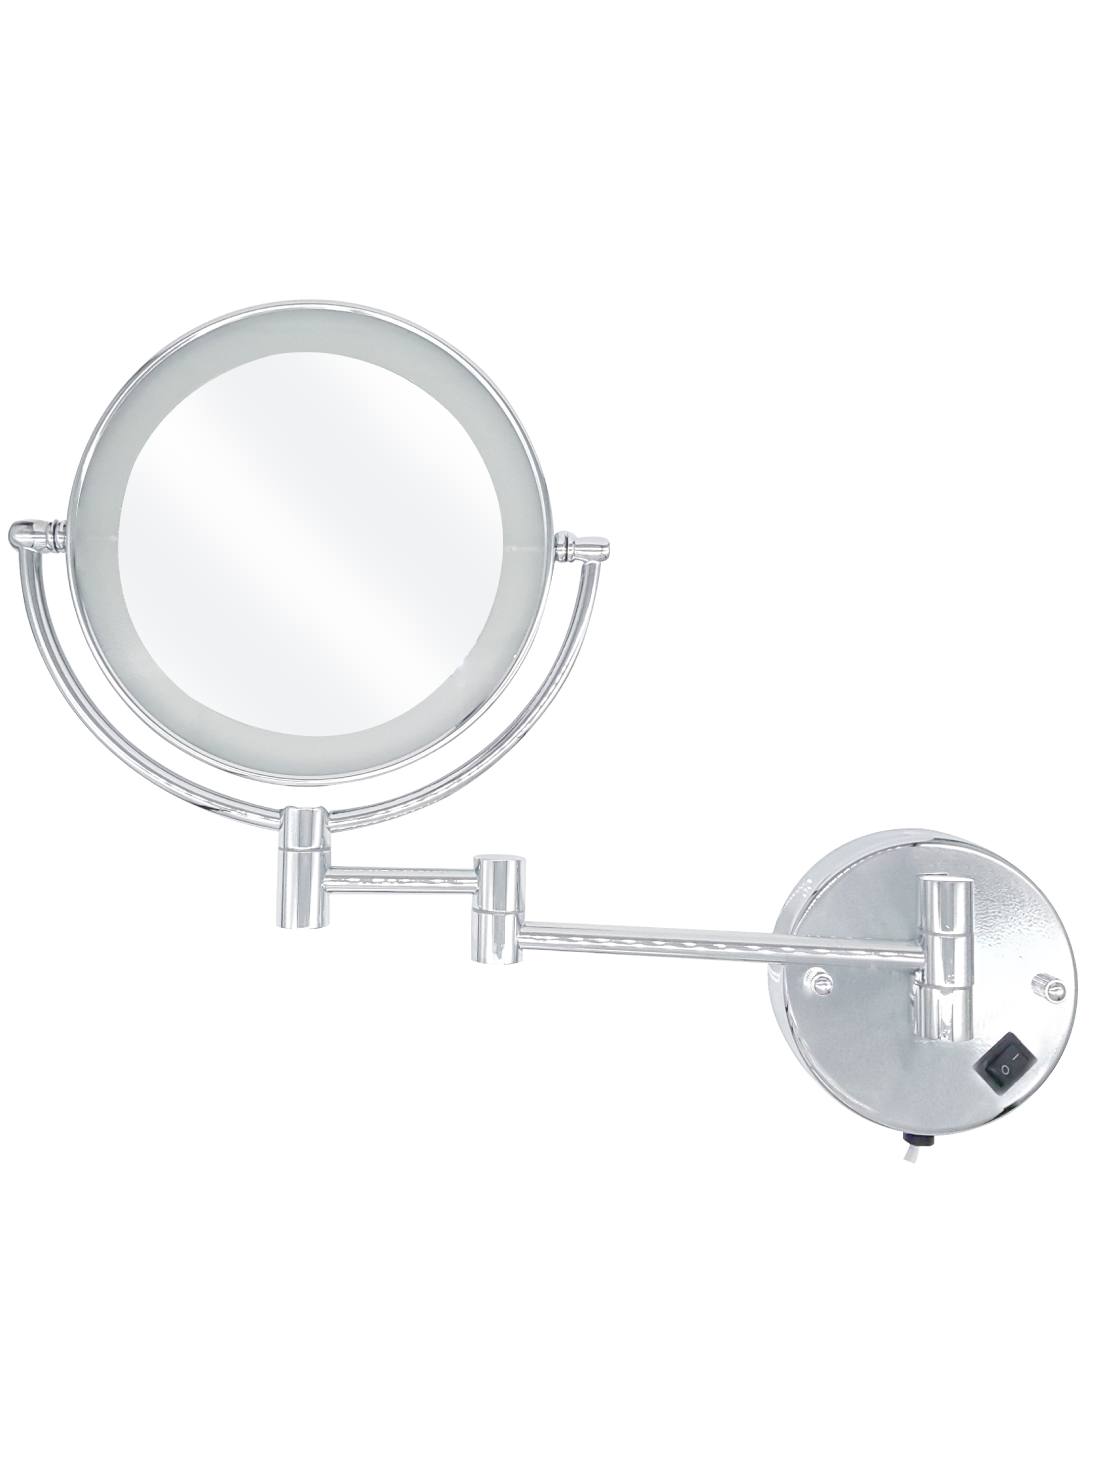 美容鏡-8英吋浴室伸帶燈伸縮